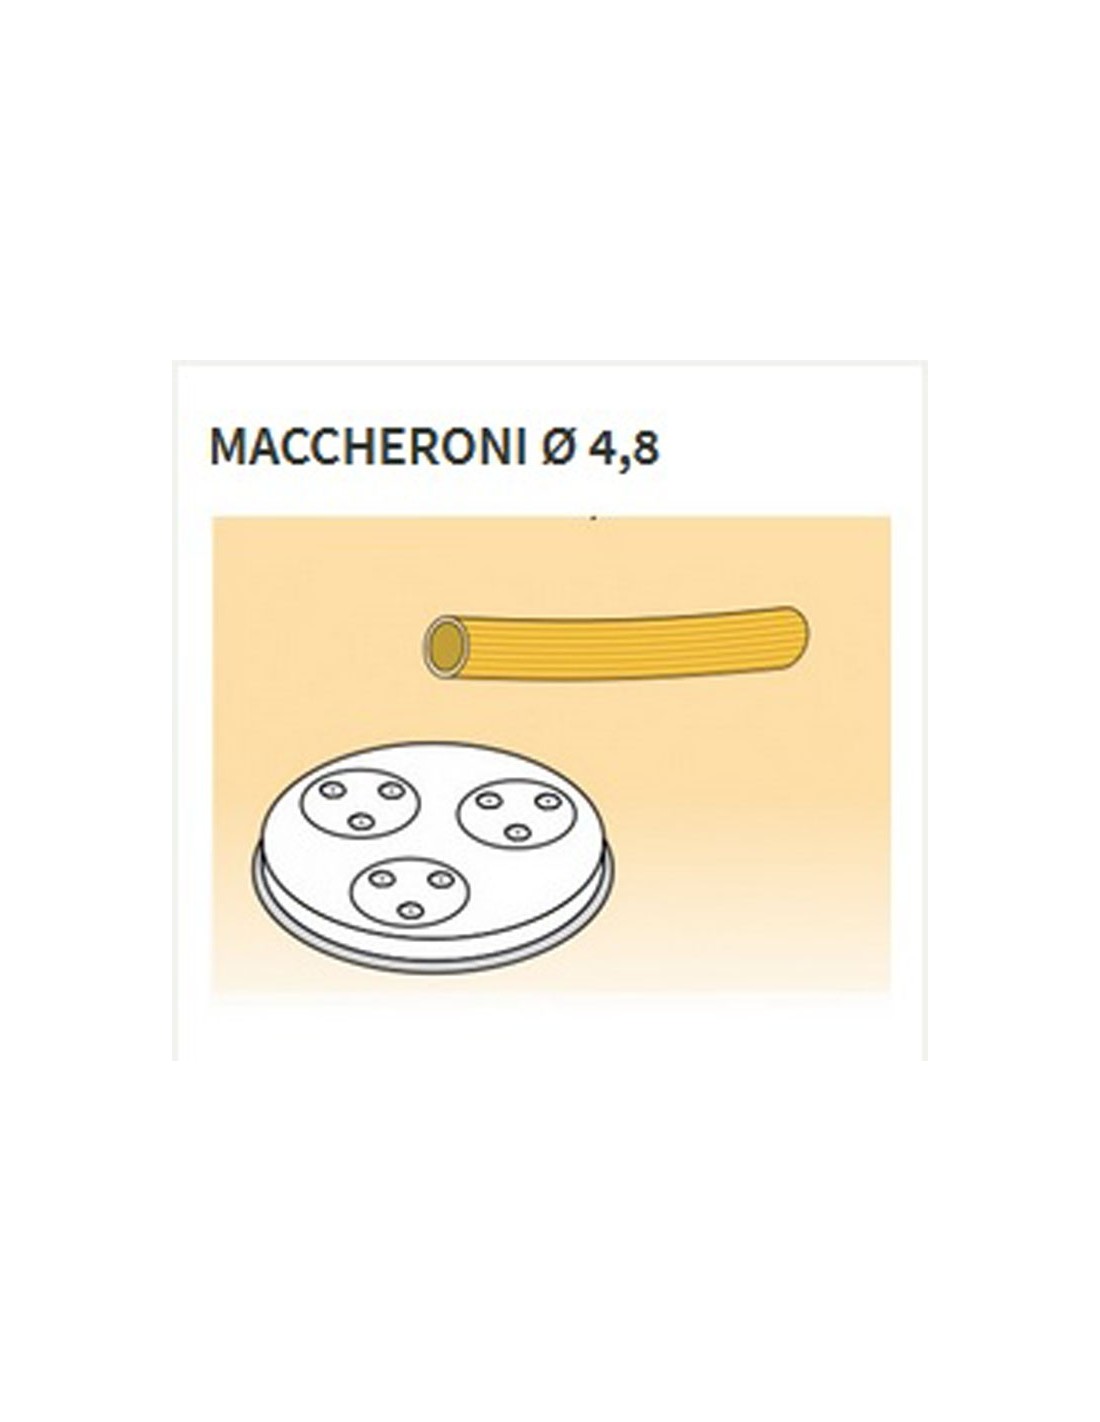 Trafile formati vari in lega ottone - Bronzo - Per macchina pasta fresca modello MPF8N - Maccheroni Ø mm 4,8